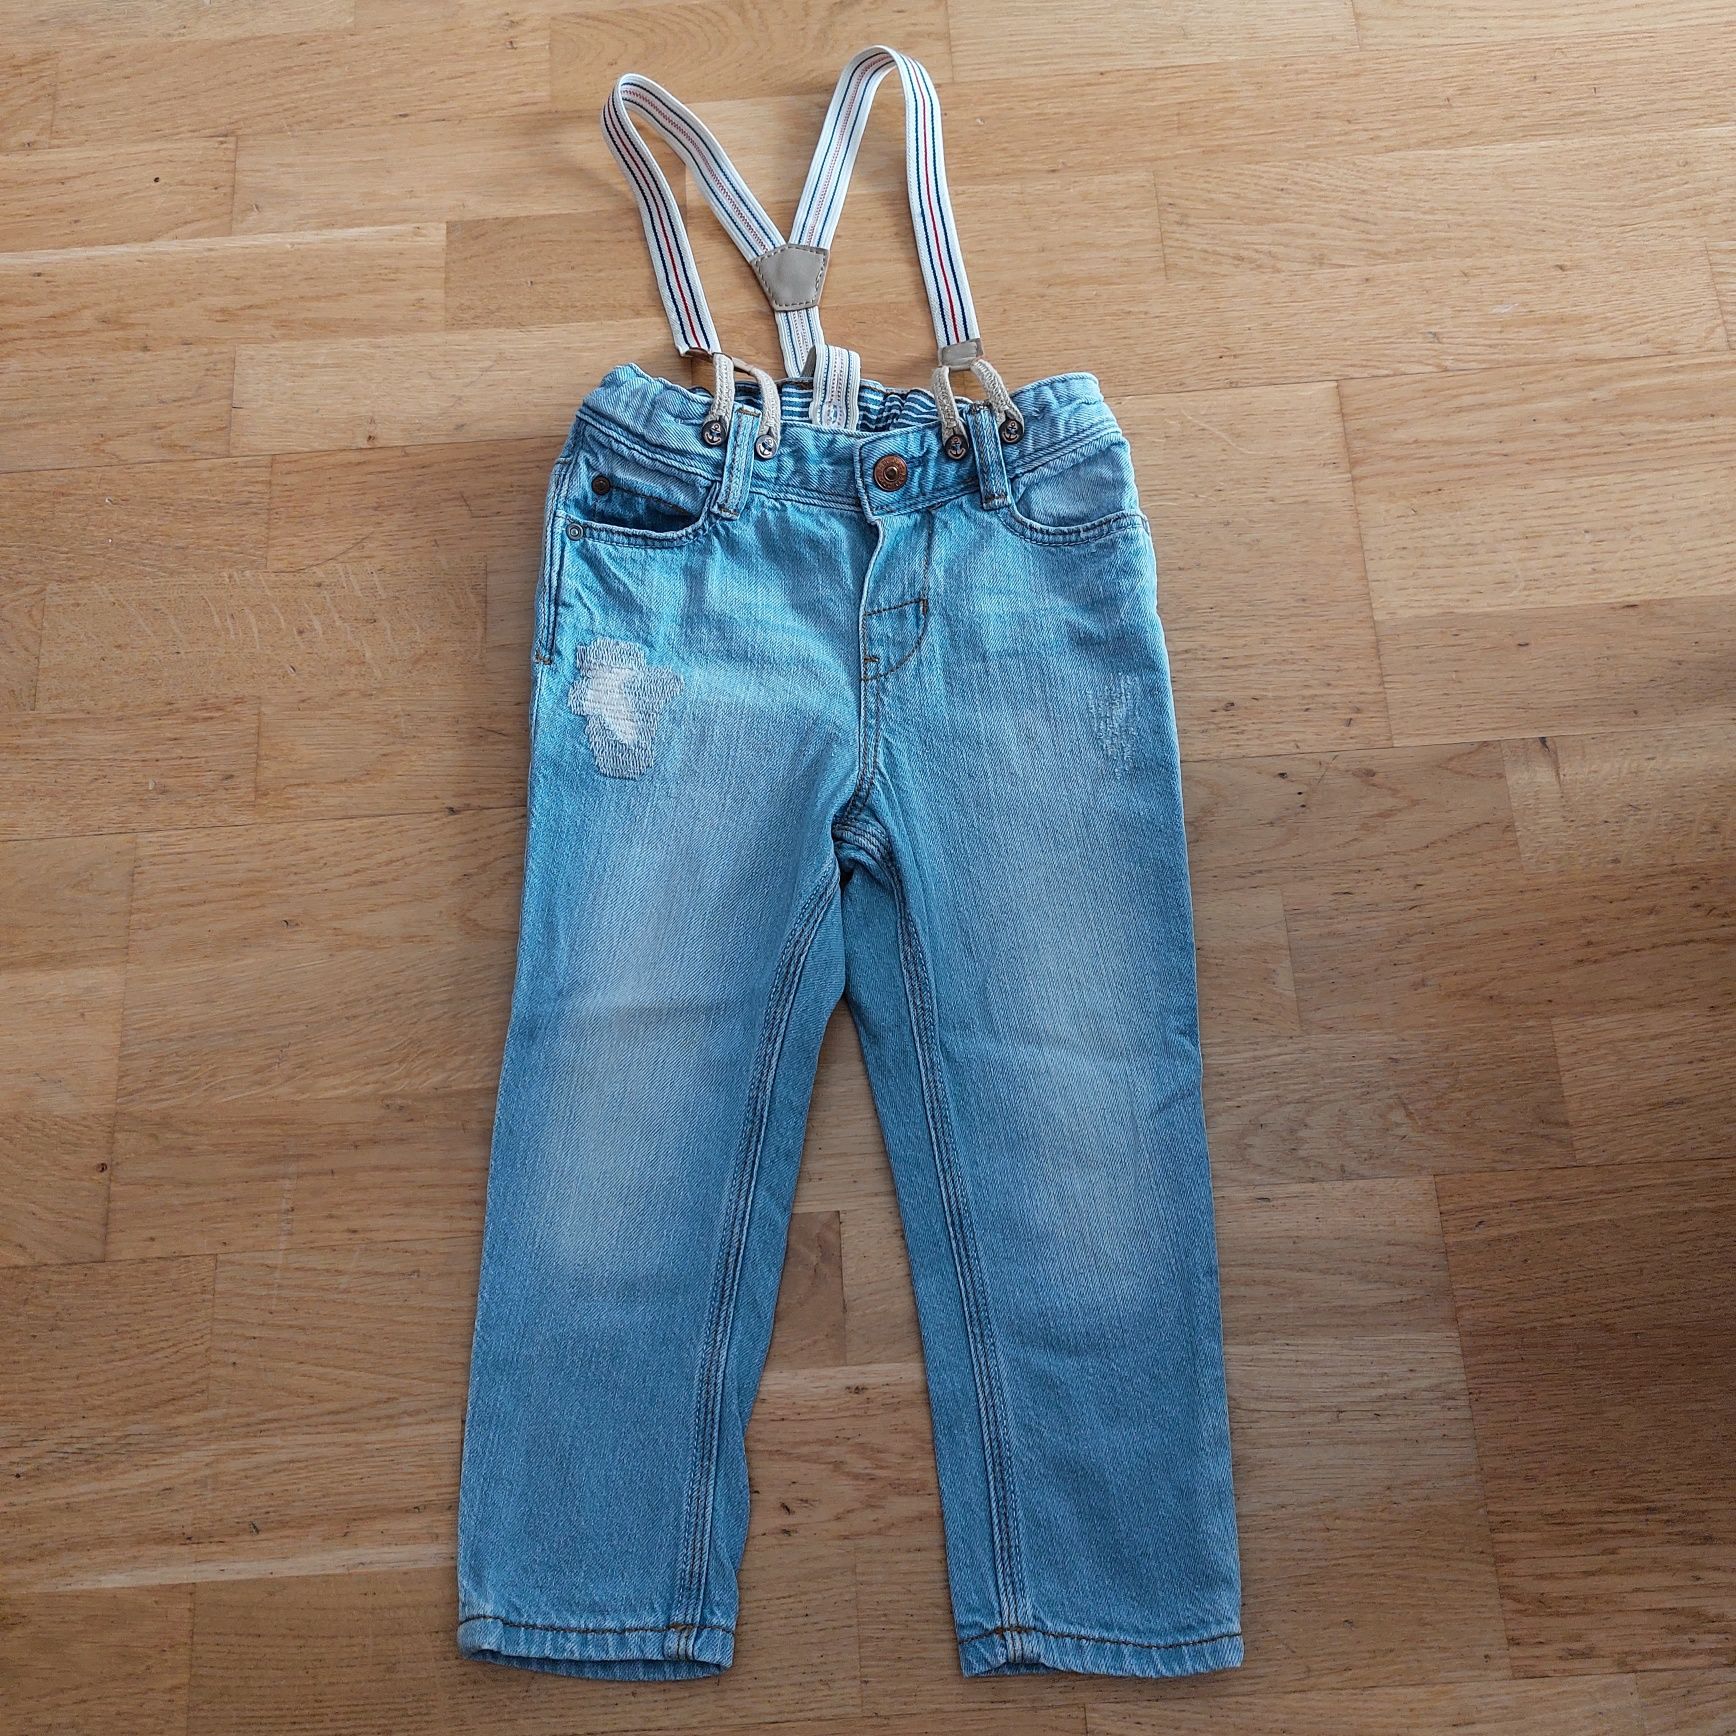 H&M spodnie jeansy z szelkami rozm. 86 12-18 miesięcy stan idealny